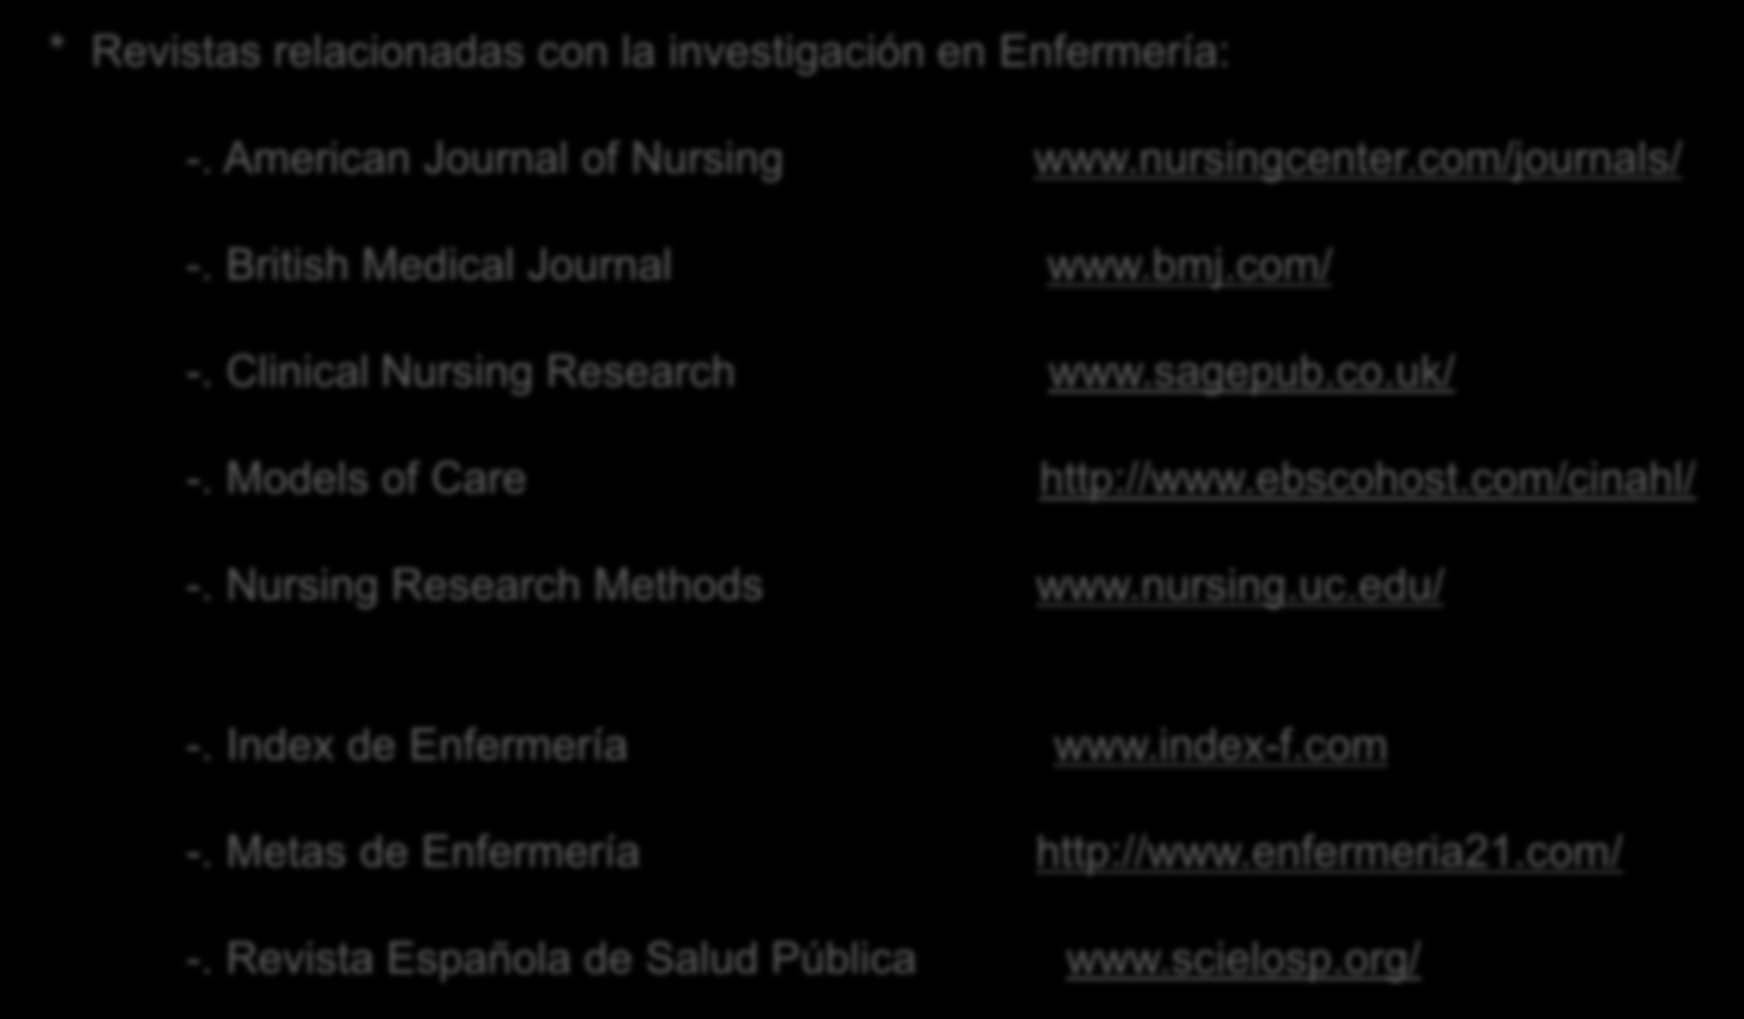 * Revistas relacionadas con la investigación en Enfermería: -. American Journal of Nursing www.nursingcenter.com/journals/ -. British Medical Journal www.bmj.com/ -. Clinical Nursing Research www.